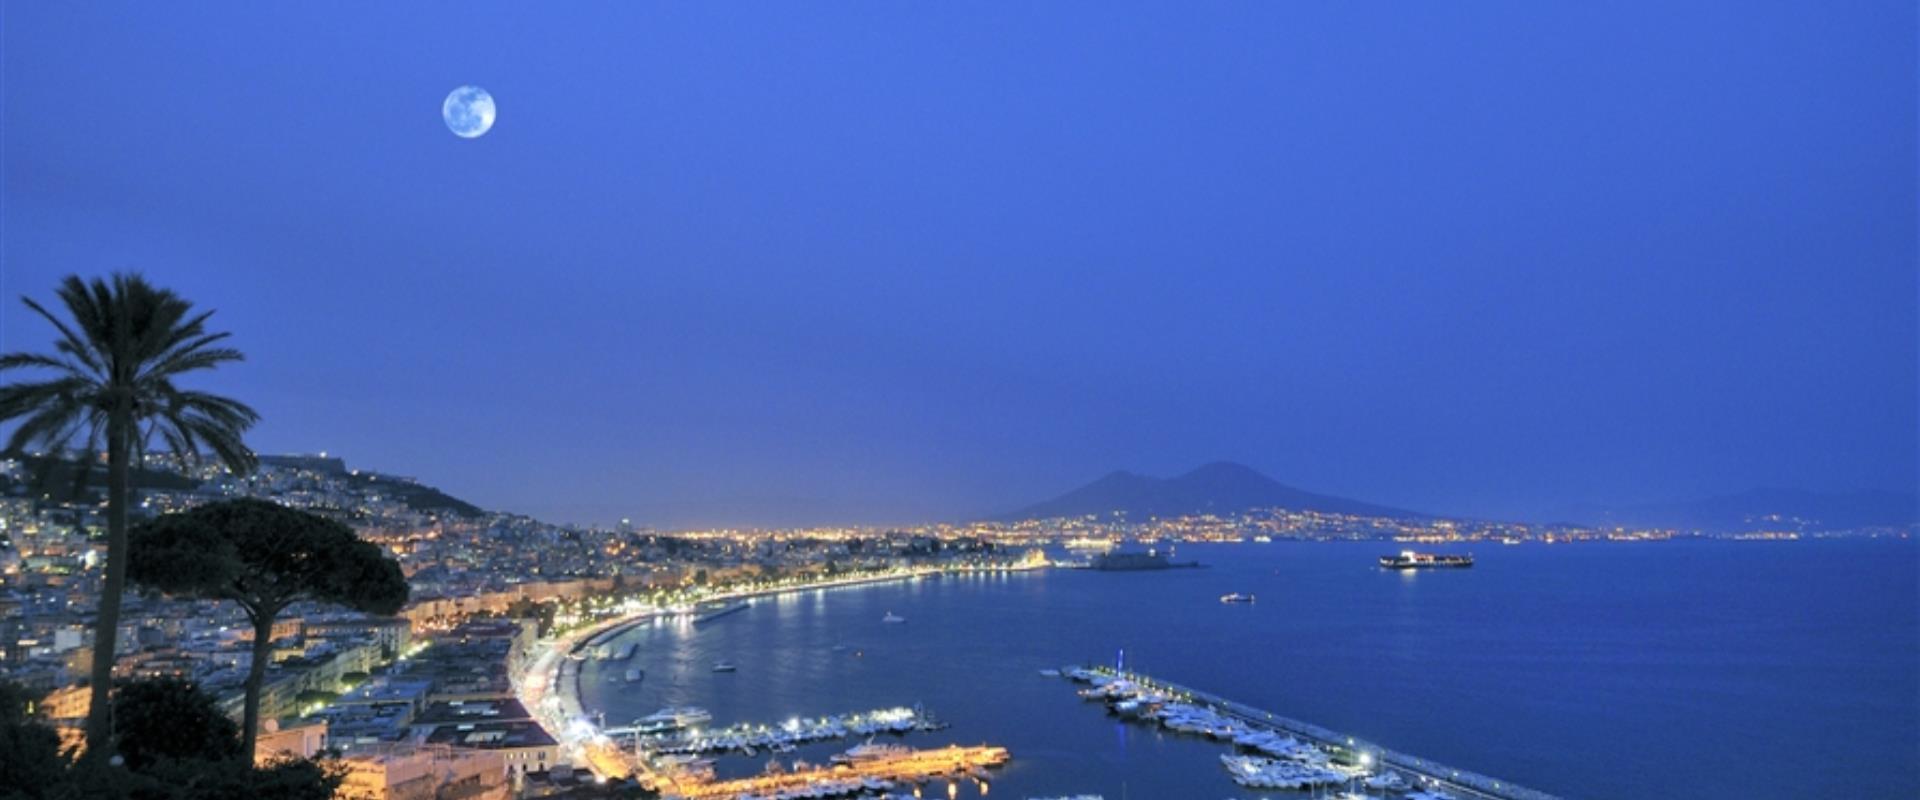 Das BW Signature Collection Hotel Paradiso ist der ideale Aufenthalt für Ihren Urlaub in Napoli